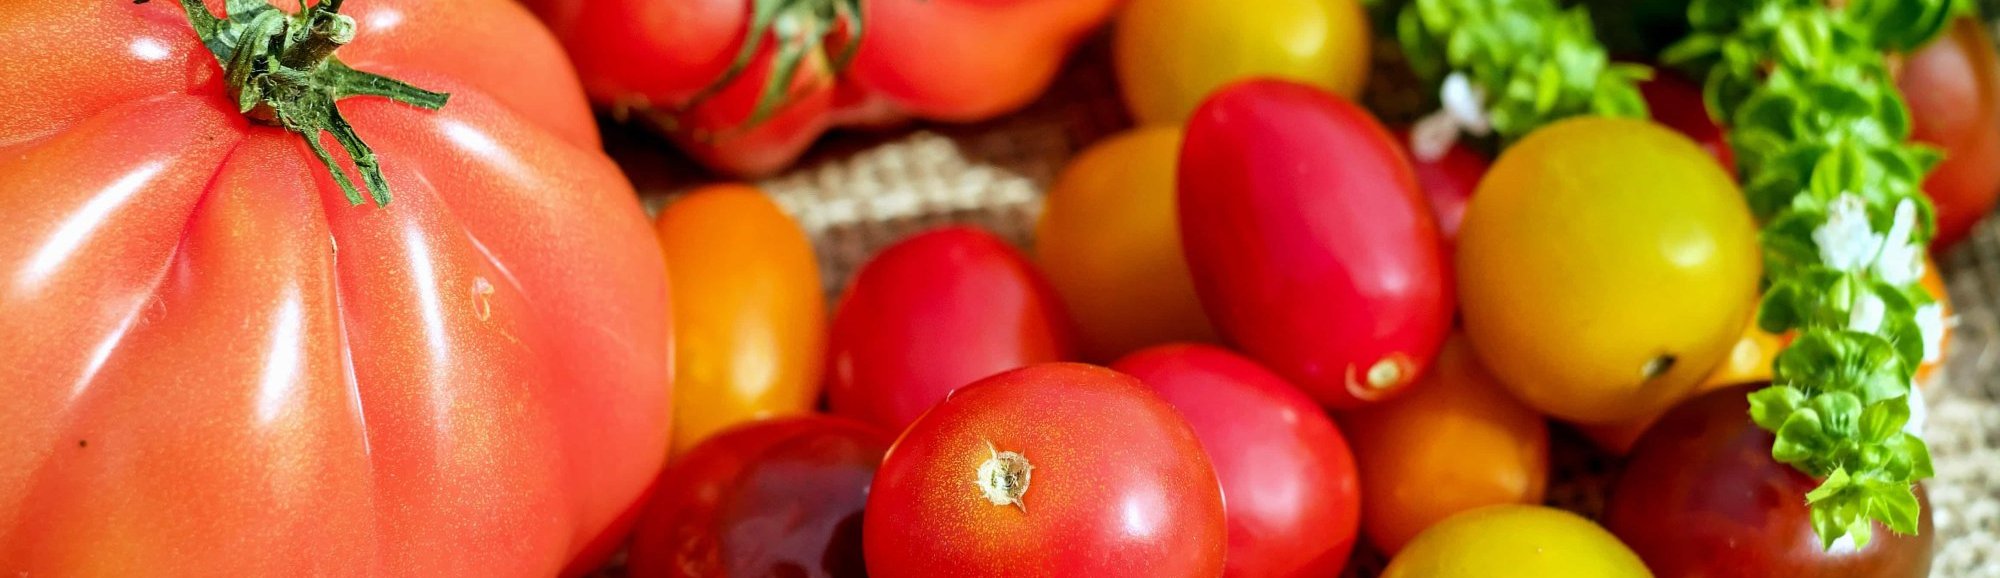 Almacen de Frutas y Verduras